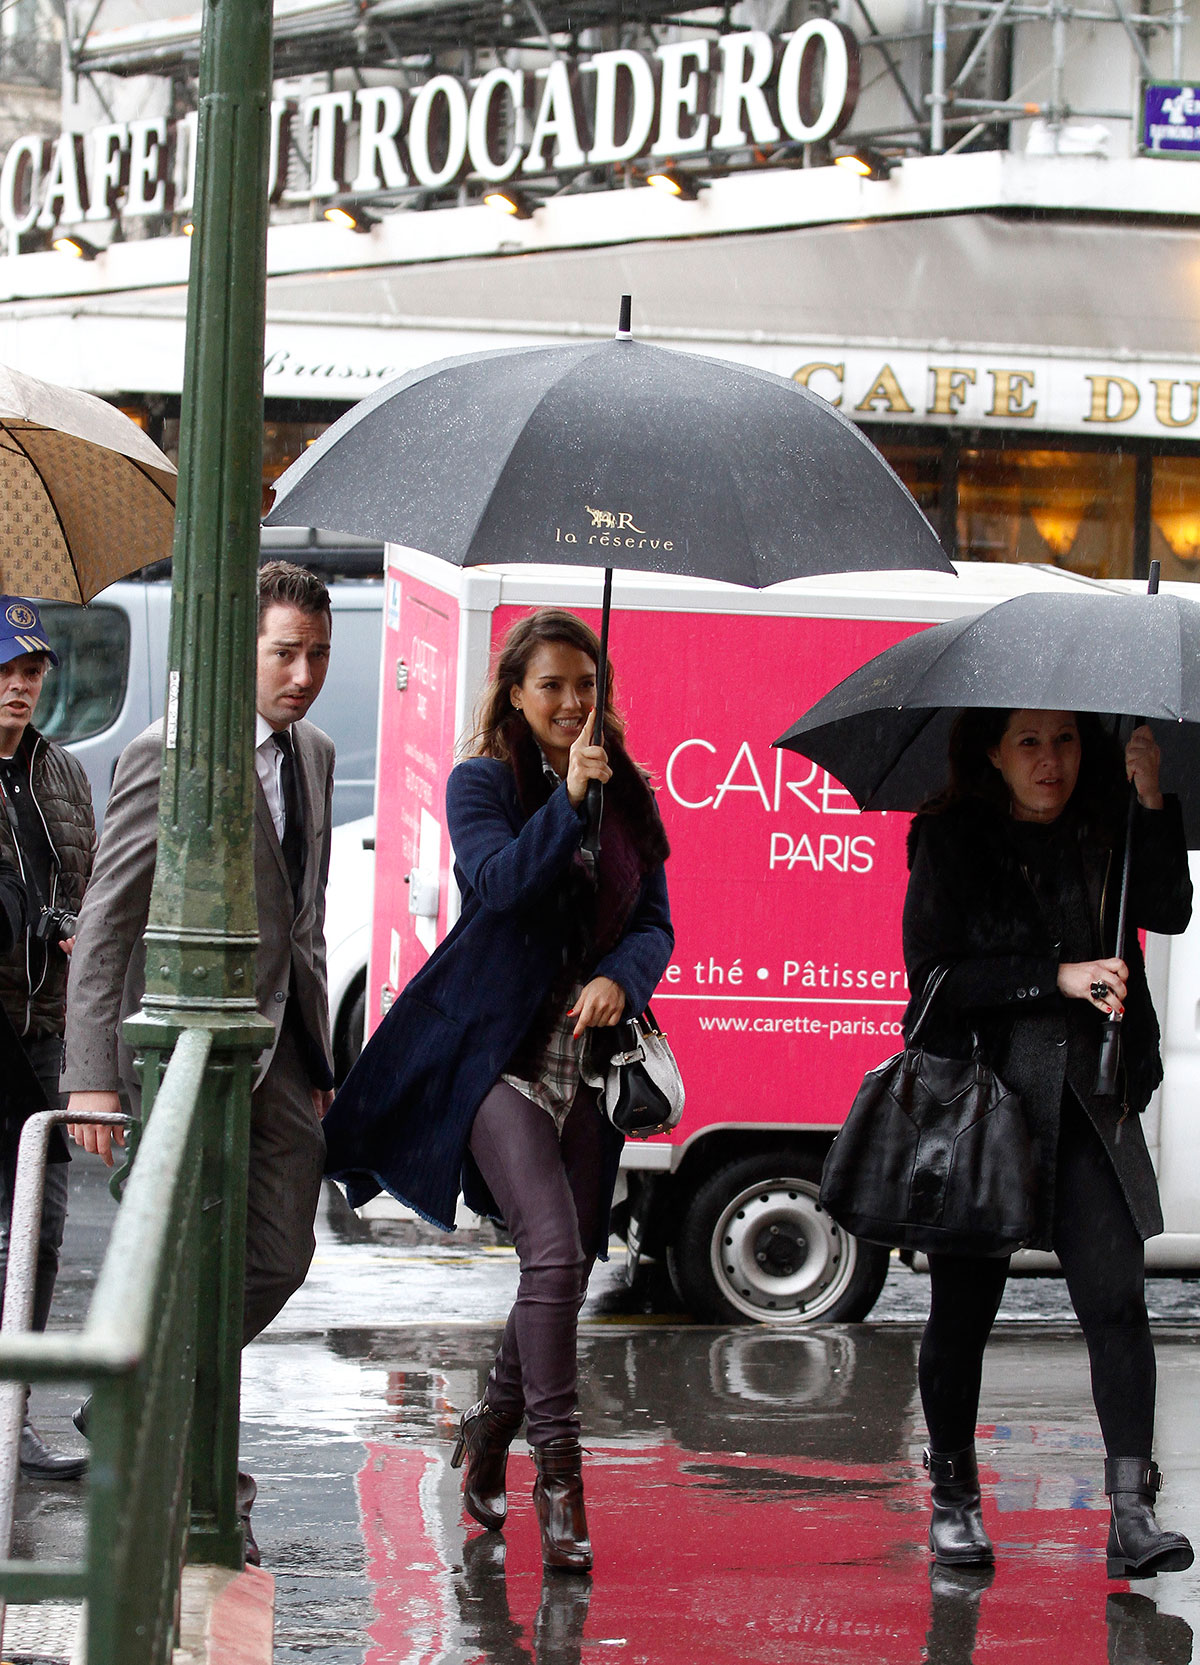 Jessica Alba strolling in Paris